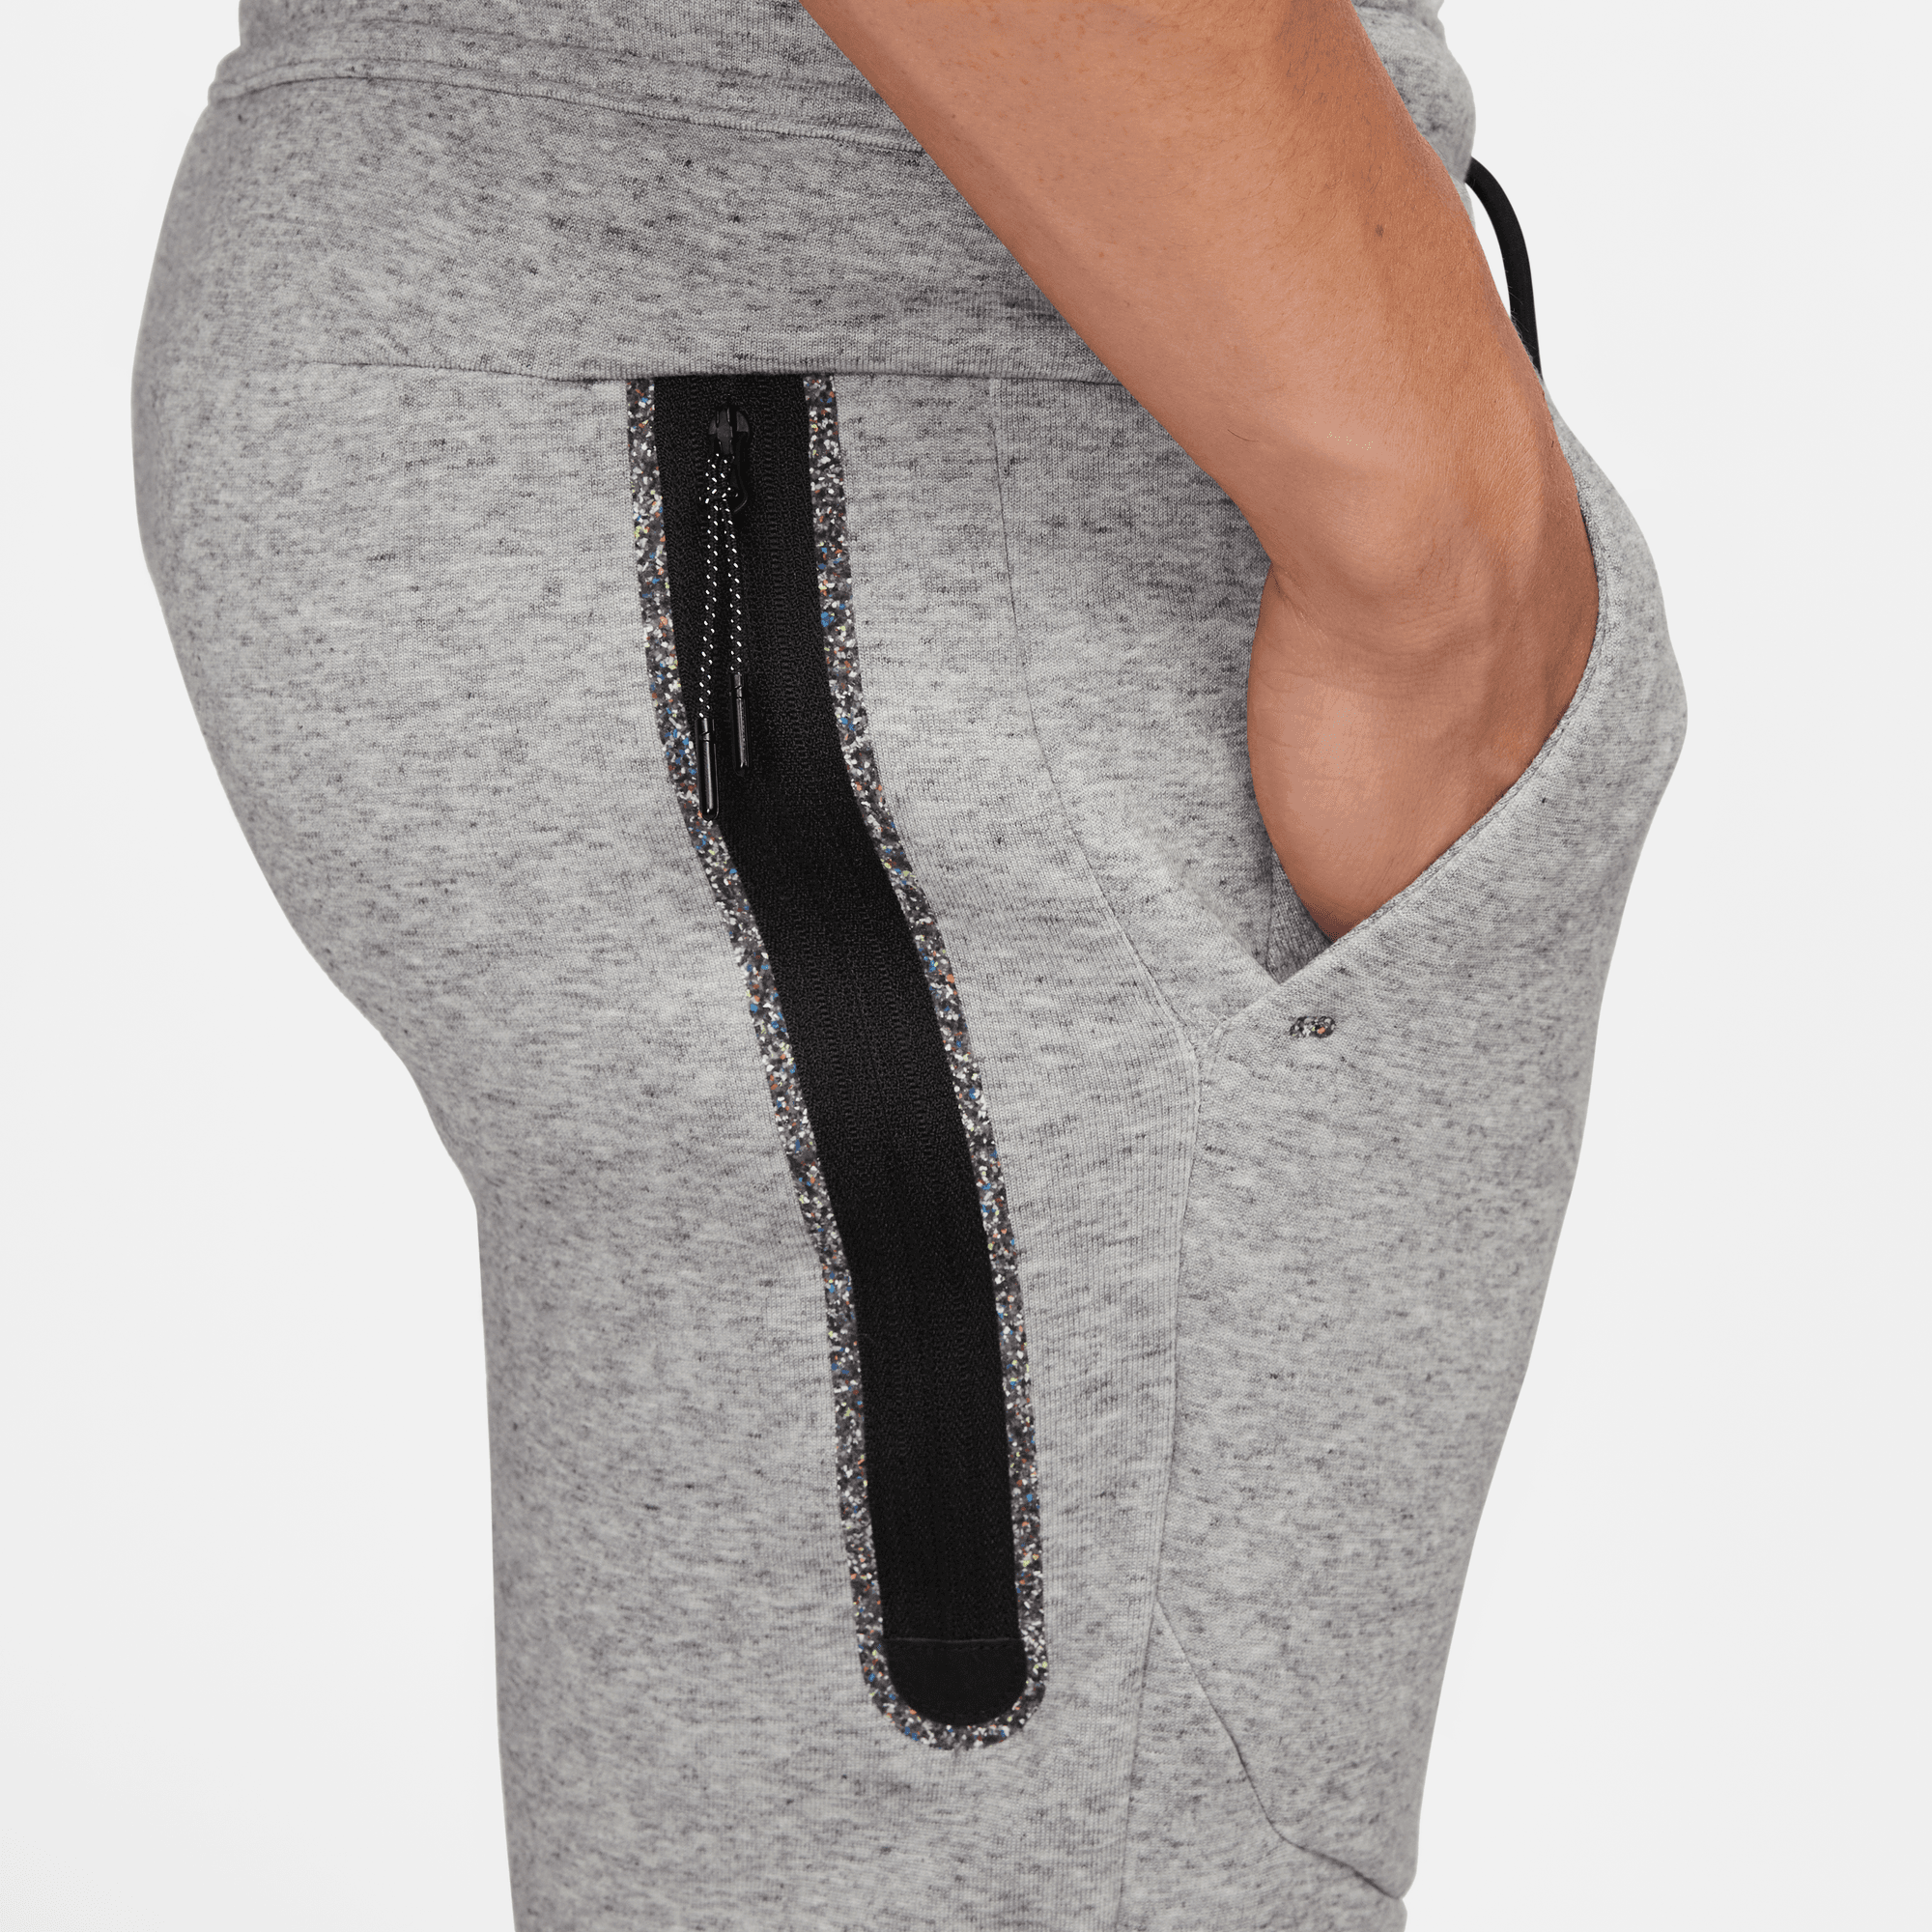 Nike Sportswear Tech Fleece Grey Joggers